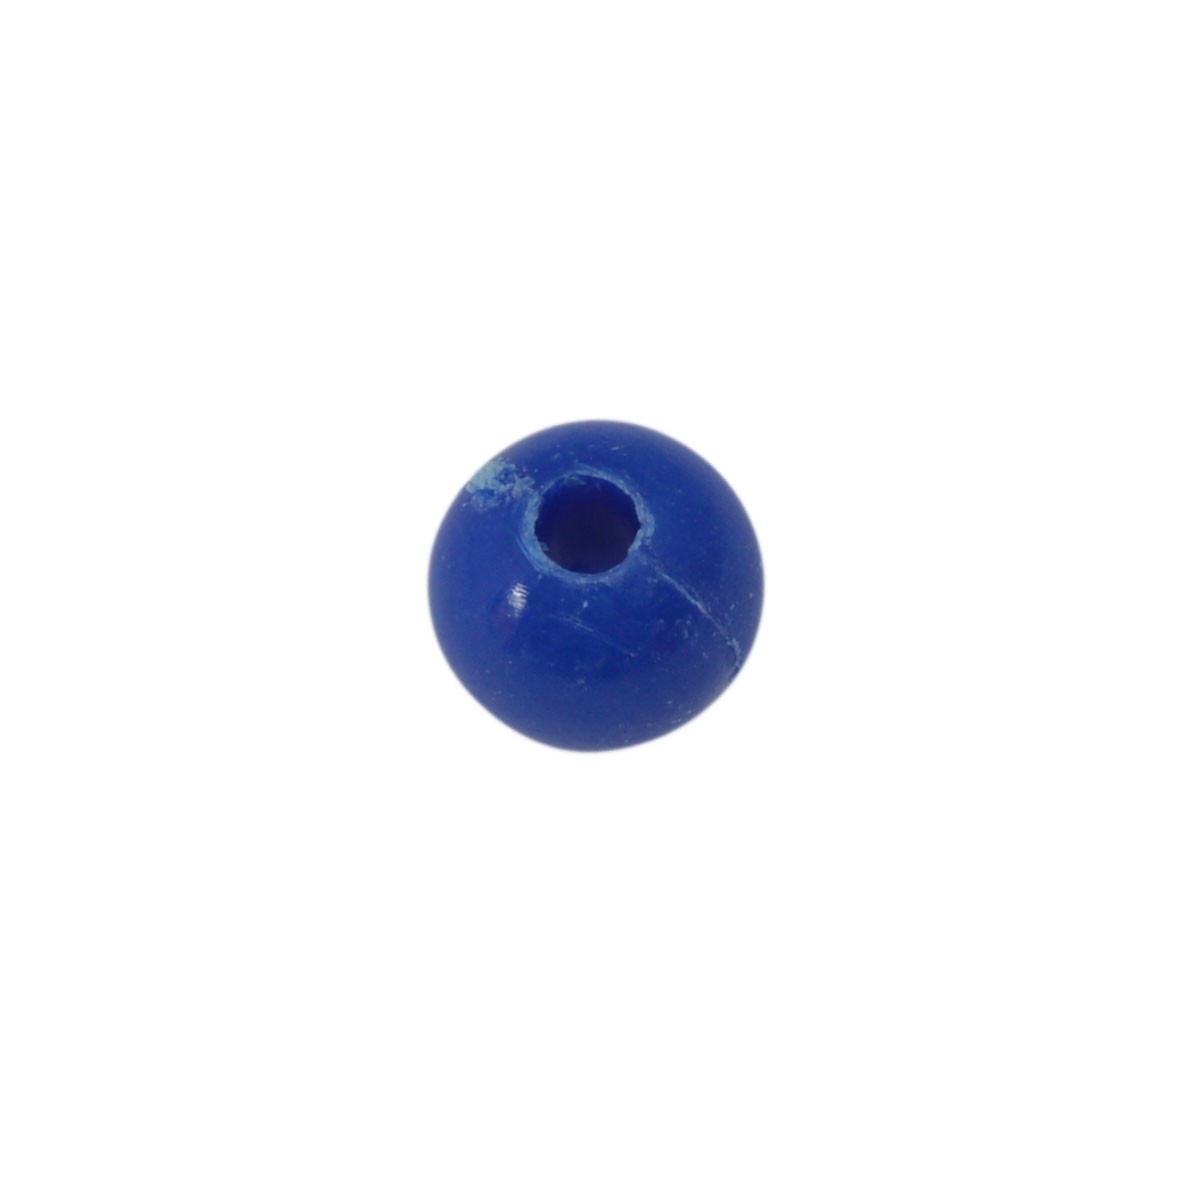 Donkerblauwe ronde acryl kraal